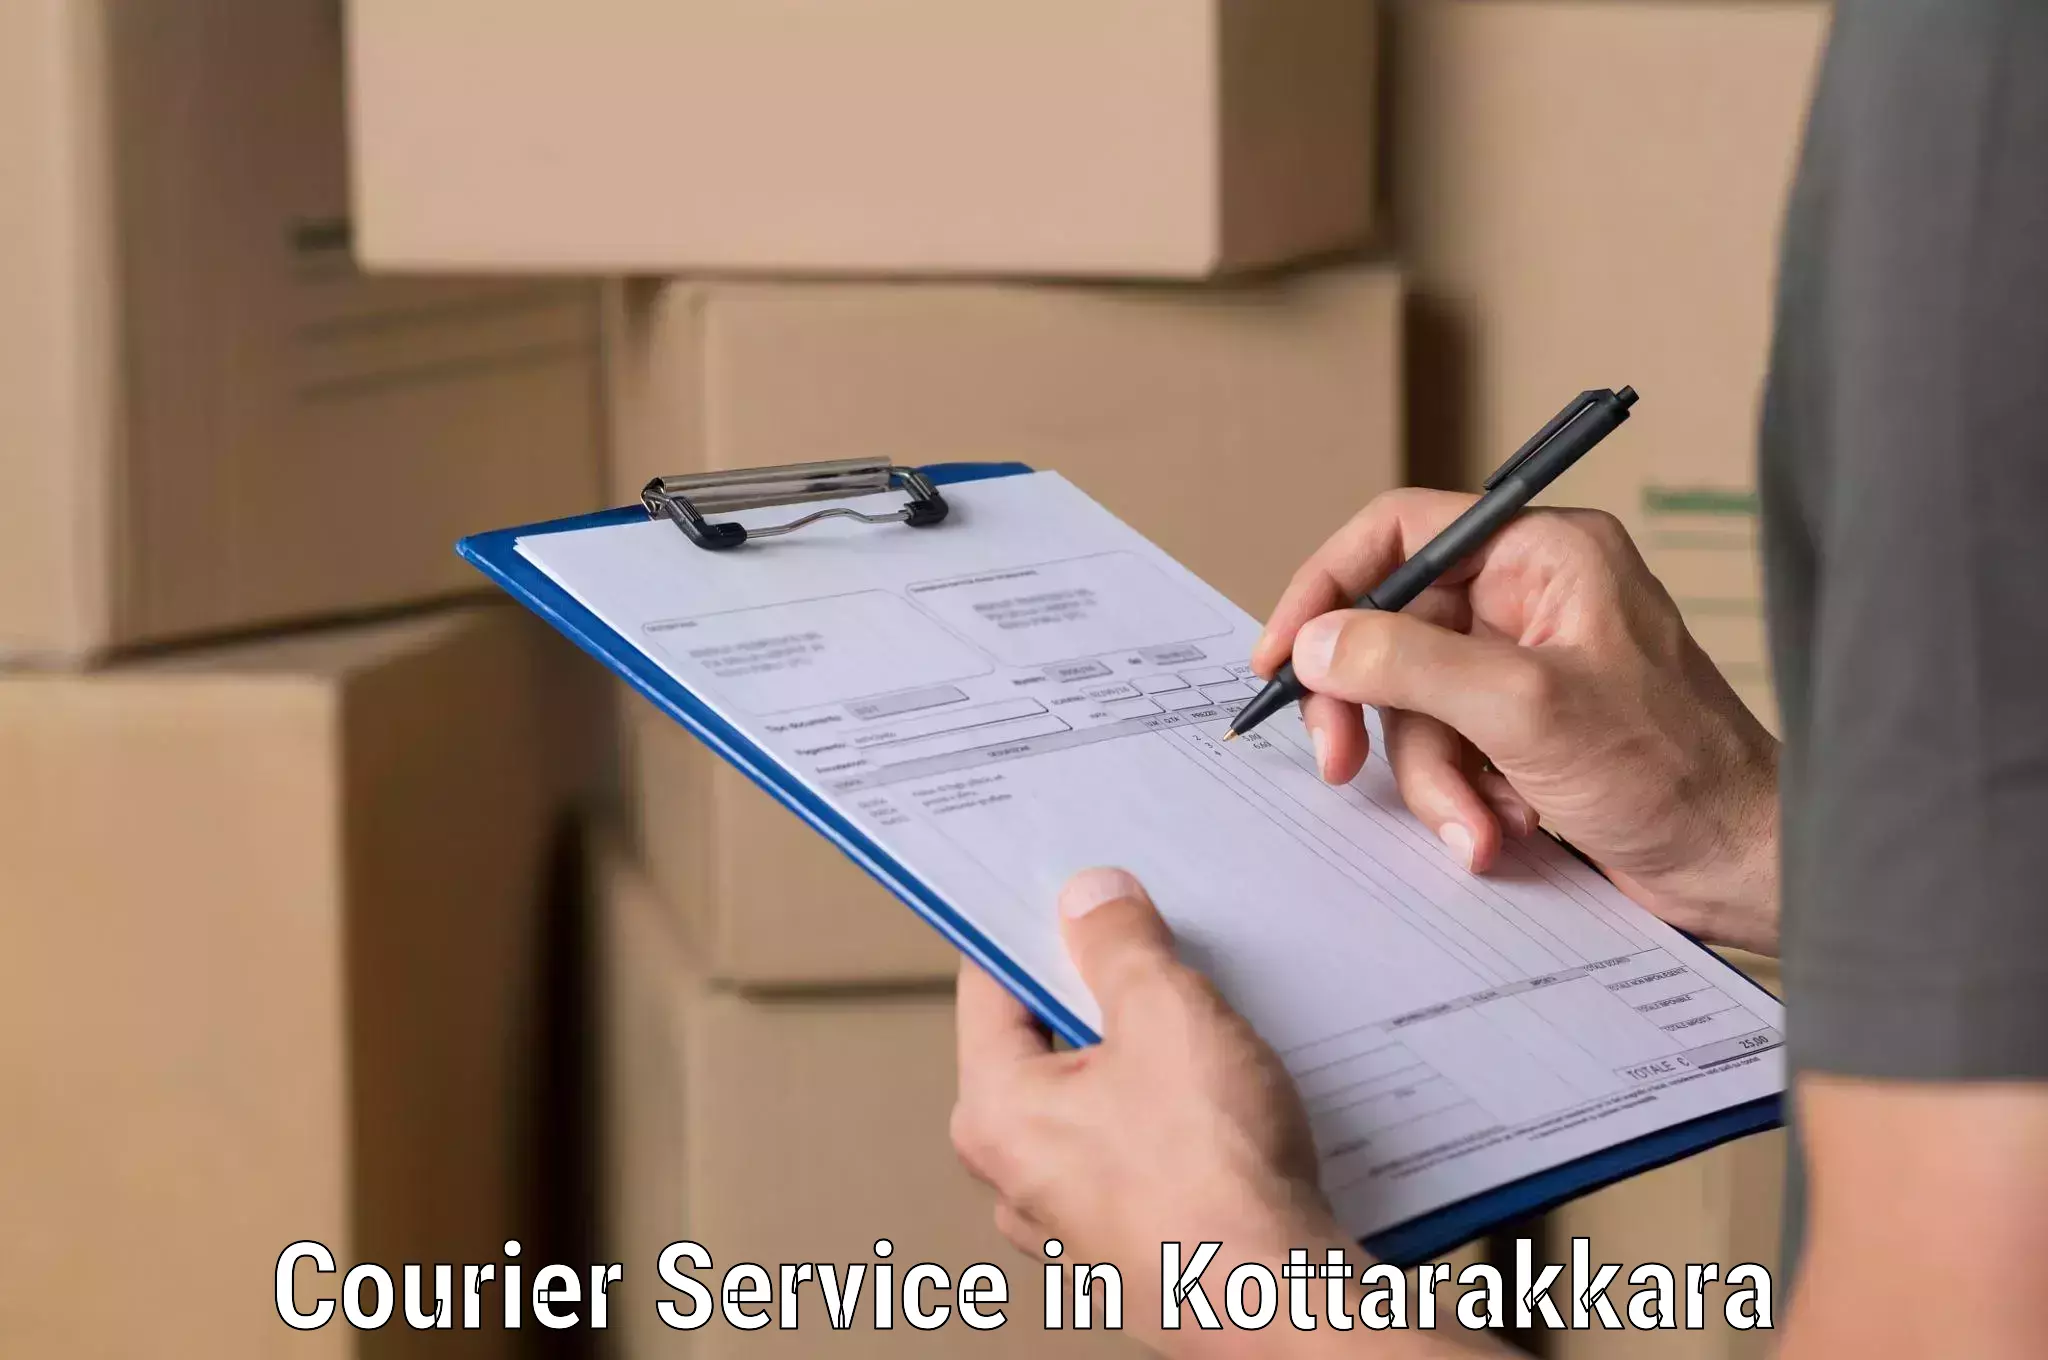 Integrated shipping solutions in Kottarakkara